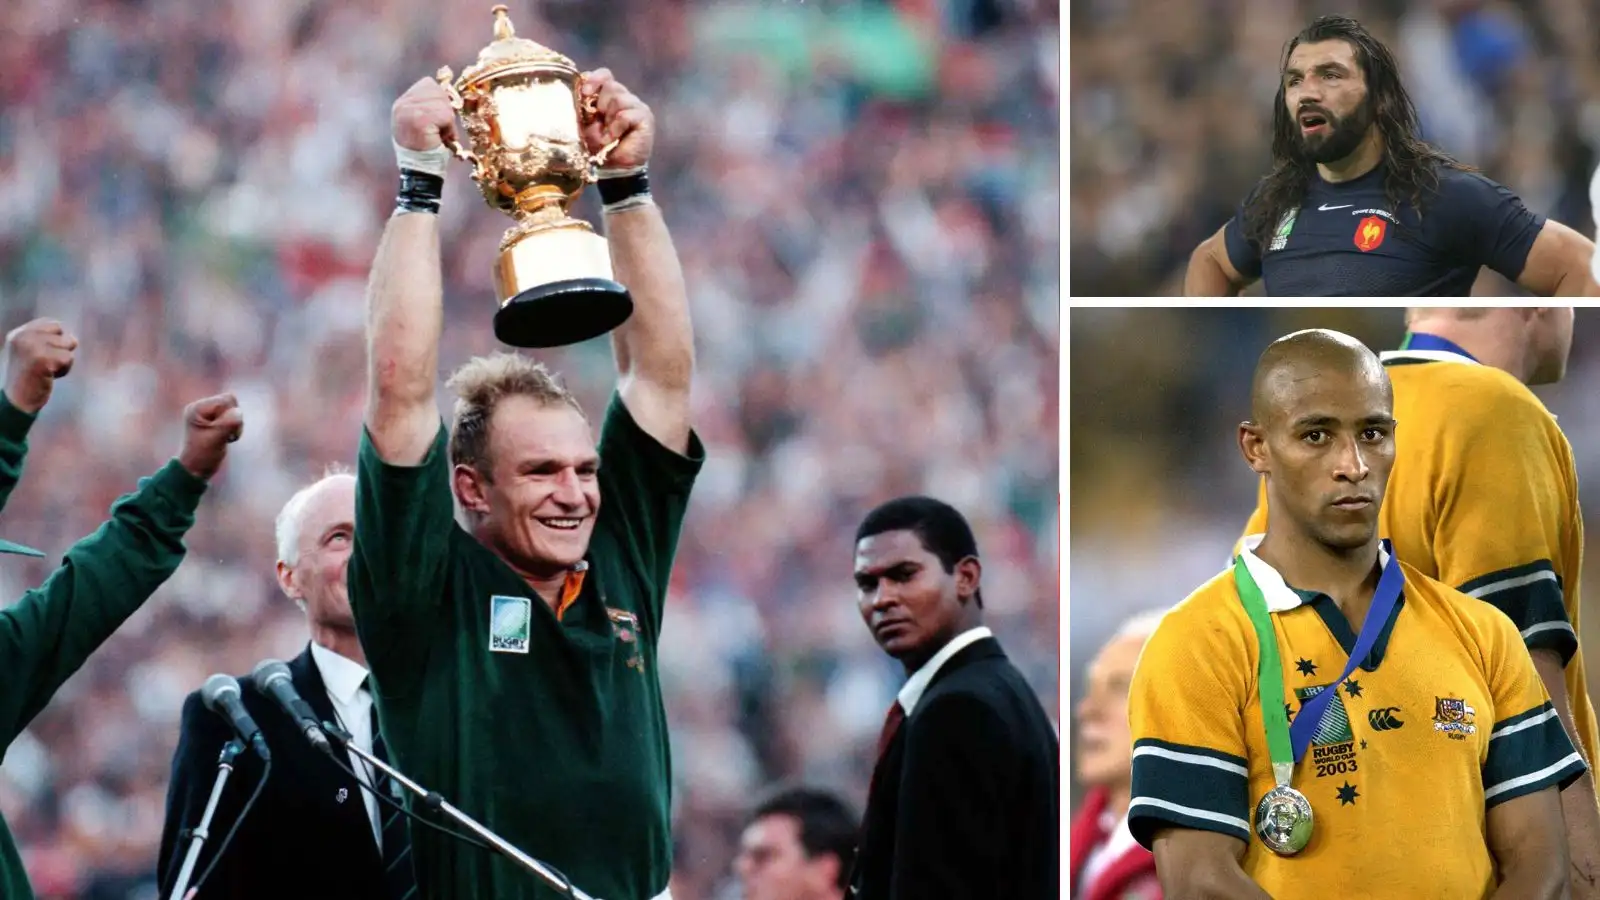 Image partagée de l'ancien capitaine des Springboks François Pienaar soulevant le trophée de la Coupe du monde de rugby, ainsi que des images du Français Sébastien Chabal et de l'Australien George Gregan.